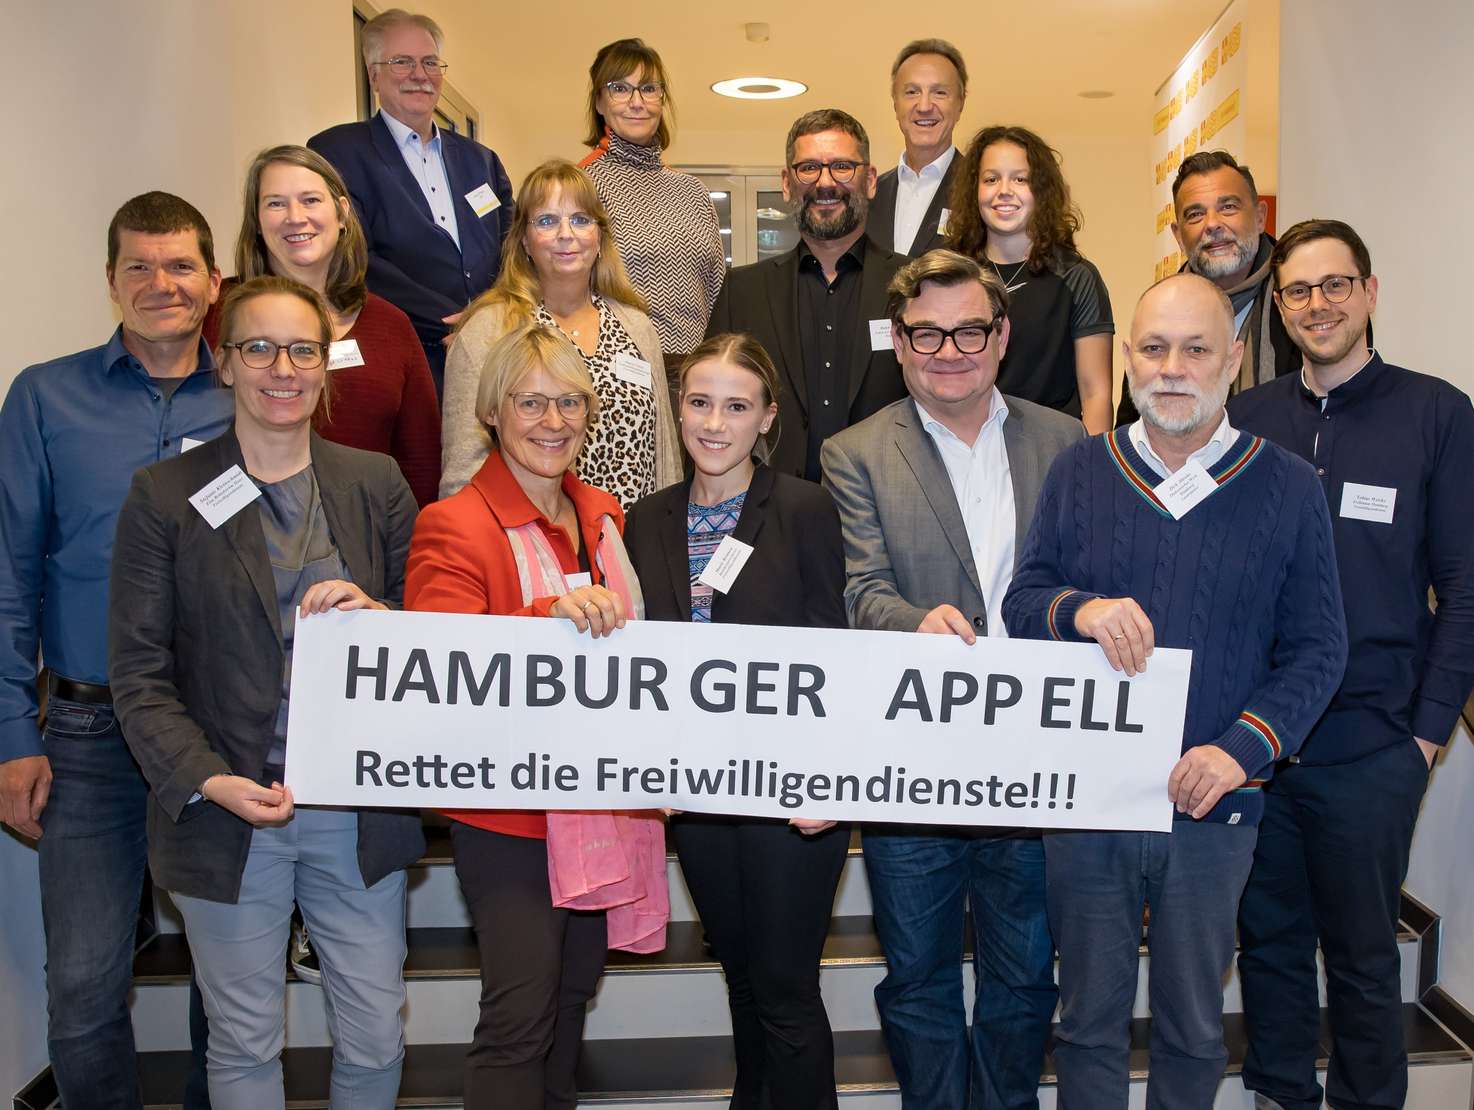 Der ASB Hamburg initiierte einen letzten Aufschrei: Hamburger Appell gegen die Kürzungen bei den Freiwilligendiensten. Foto: Annette Schrader.